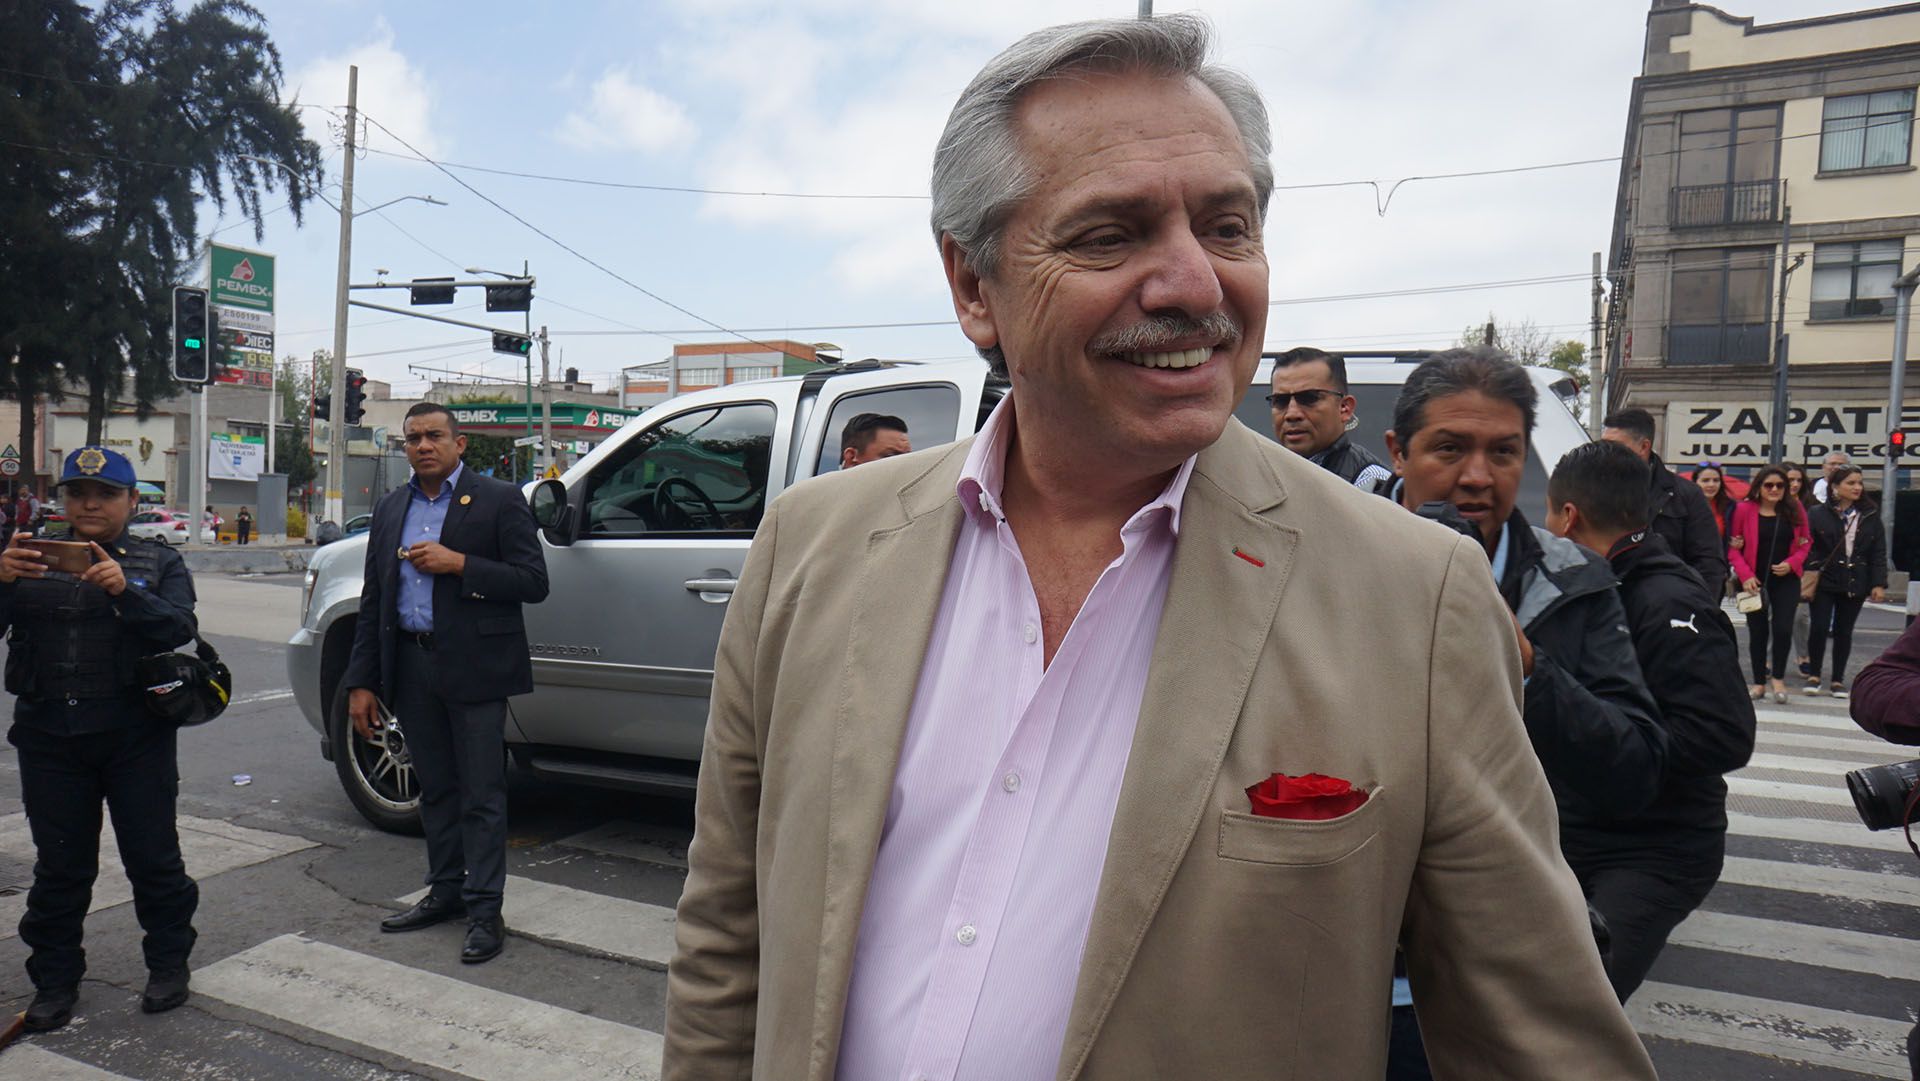 El presidente electo Alberto Fernández a la salida de la basílica de Guadalupe en México